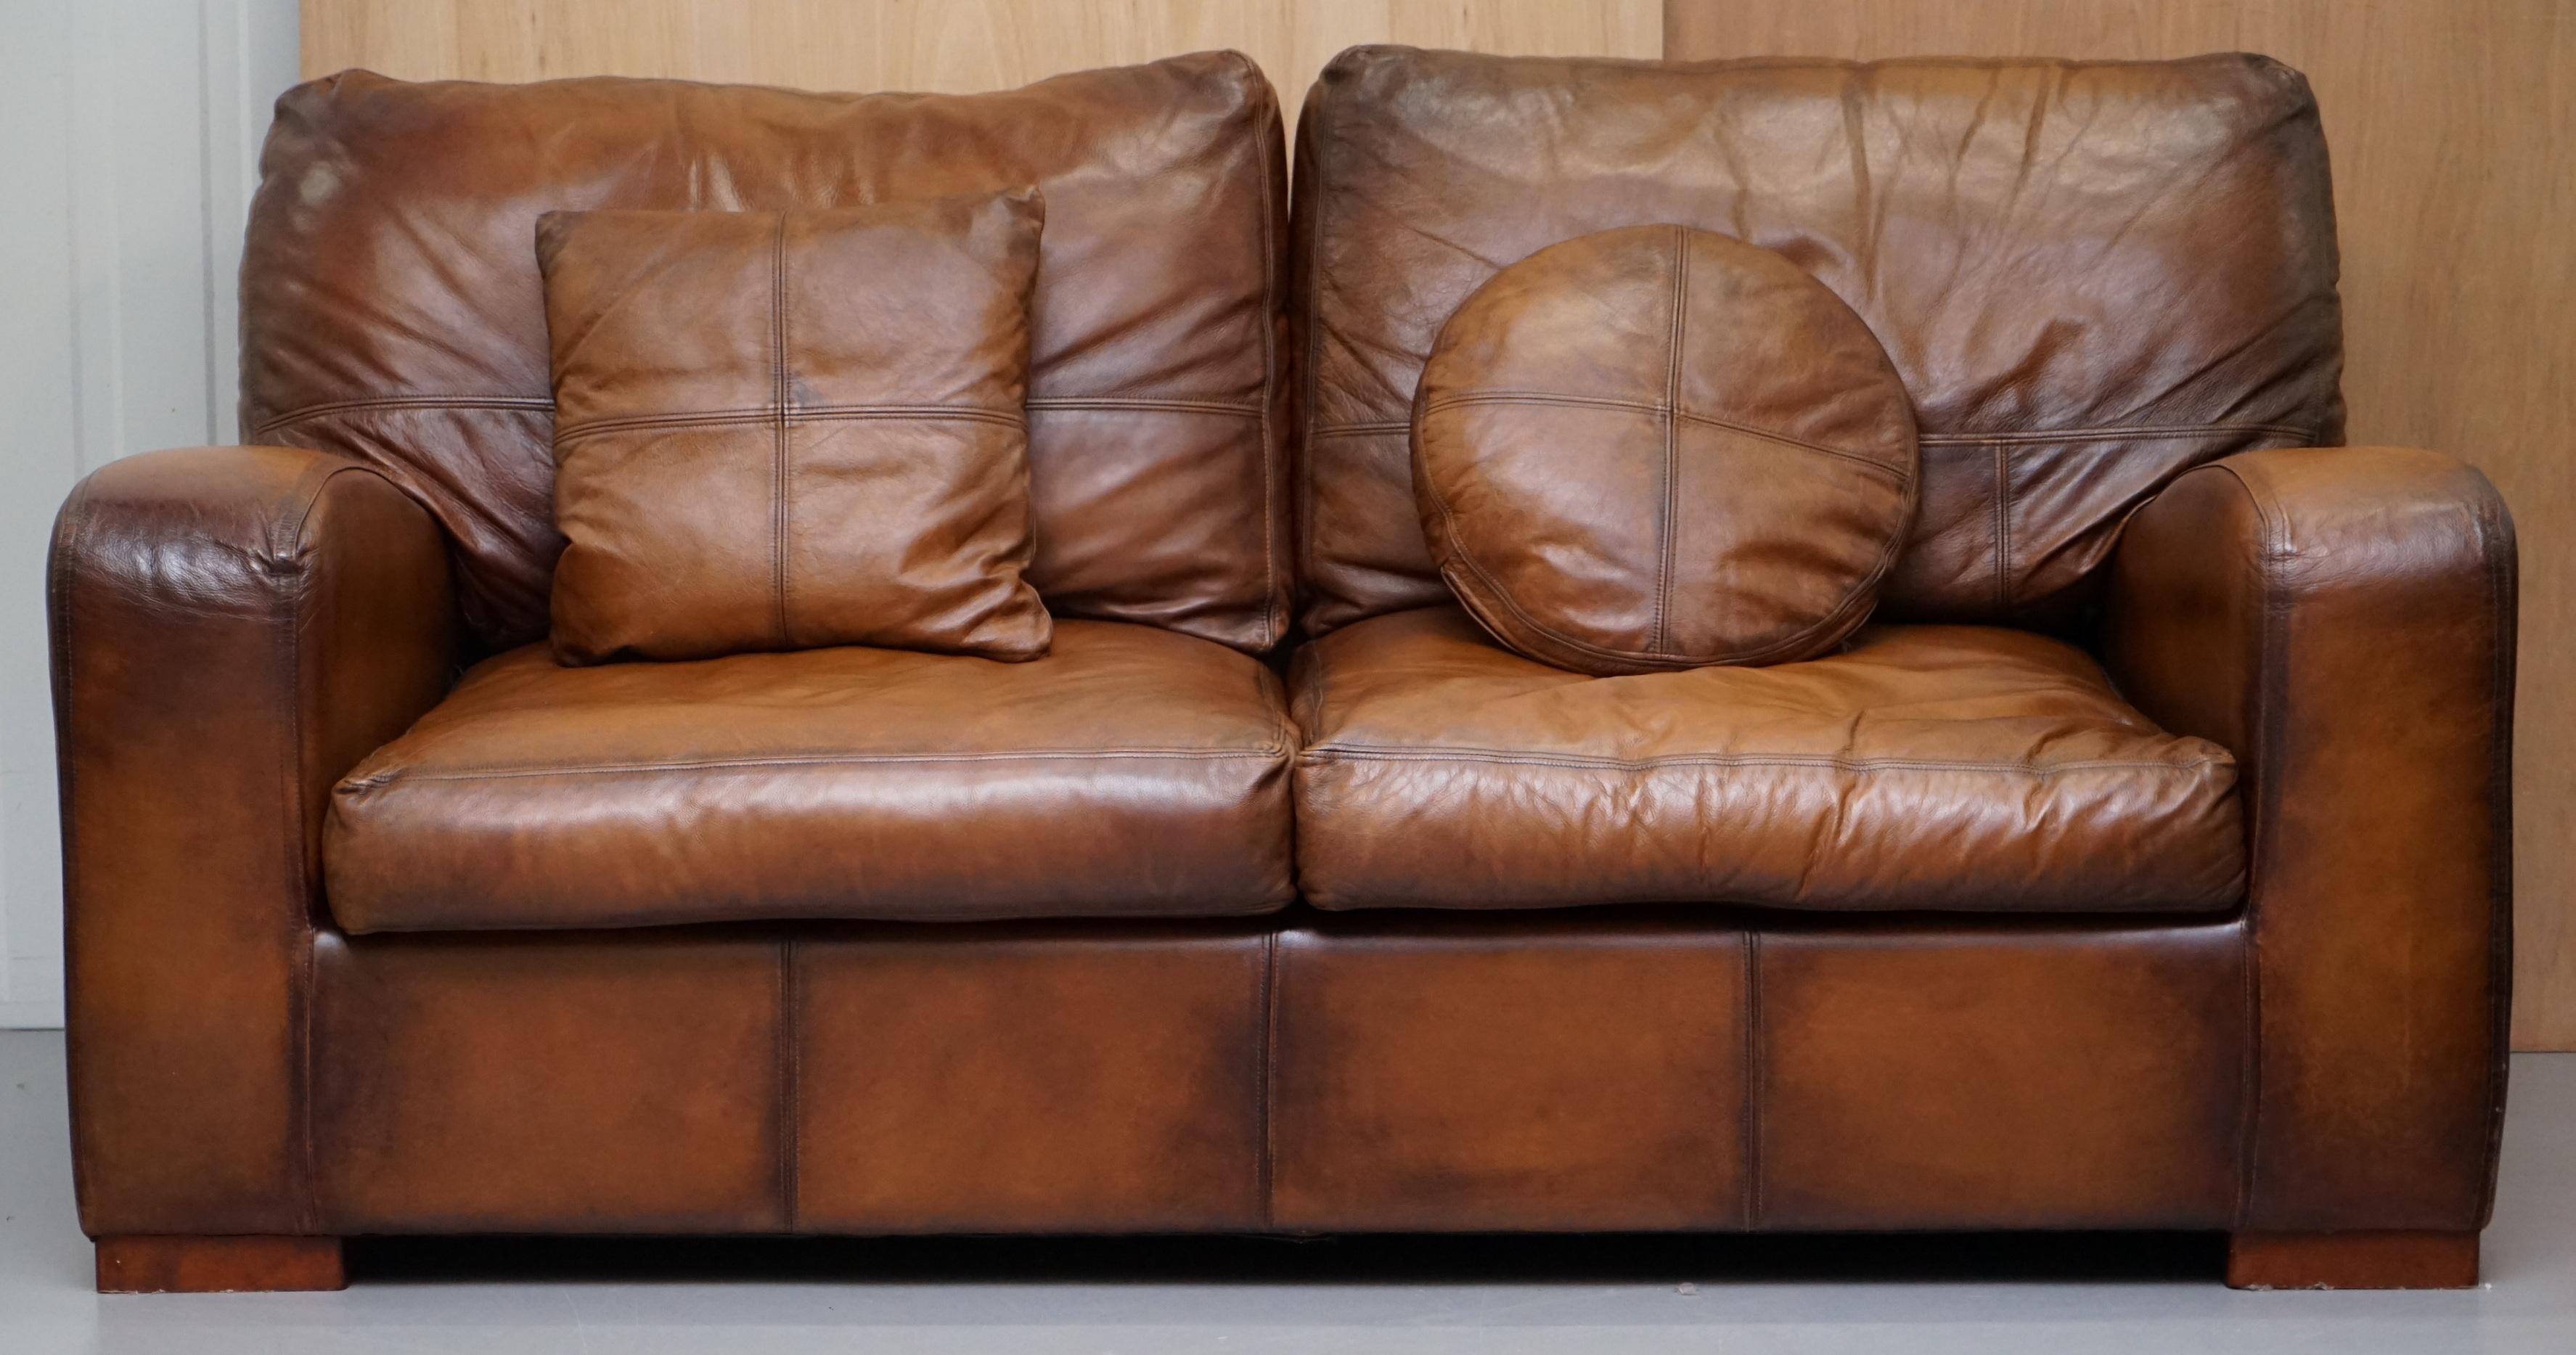 Wir freuen uns, zum Verkauf anbieten Hand gefärbt im Alter von braunem Leder Sofa

Ein gut aussehendes, gut gemachtes und dekoratives Sofa, die Linien an den Seiten und besonders die Armlehnen sind sehr schön

Wir haben es gereinigt, gewachst